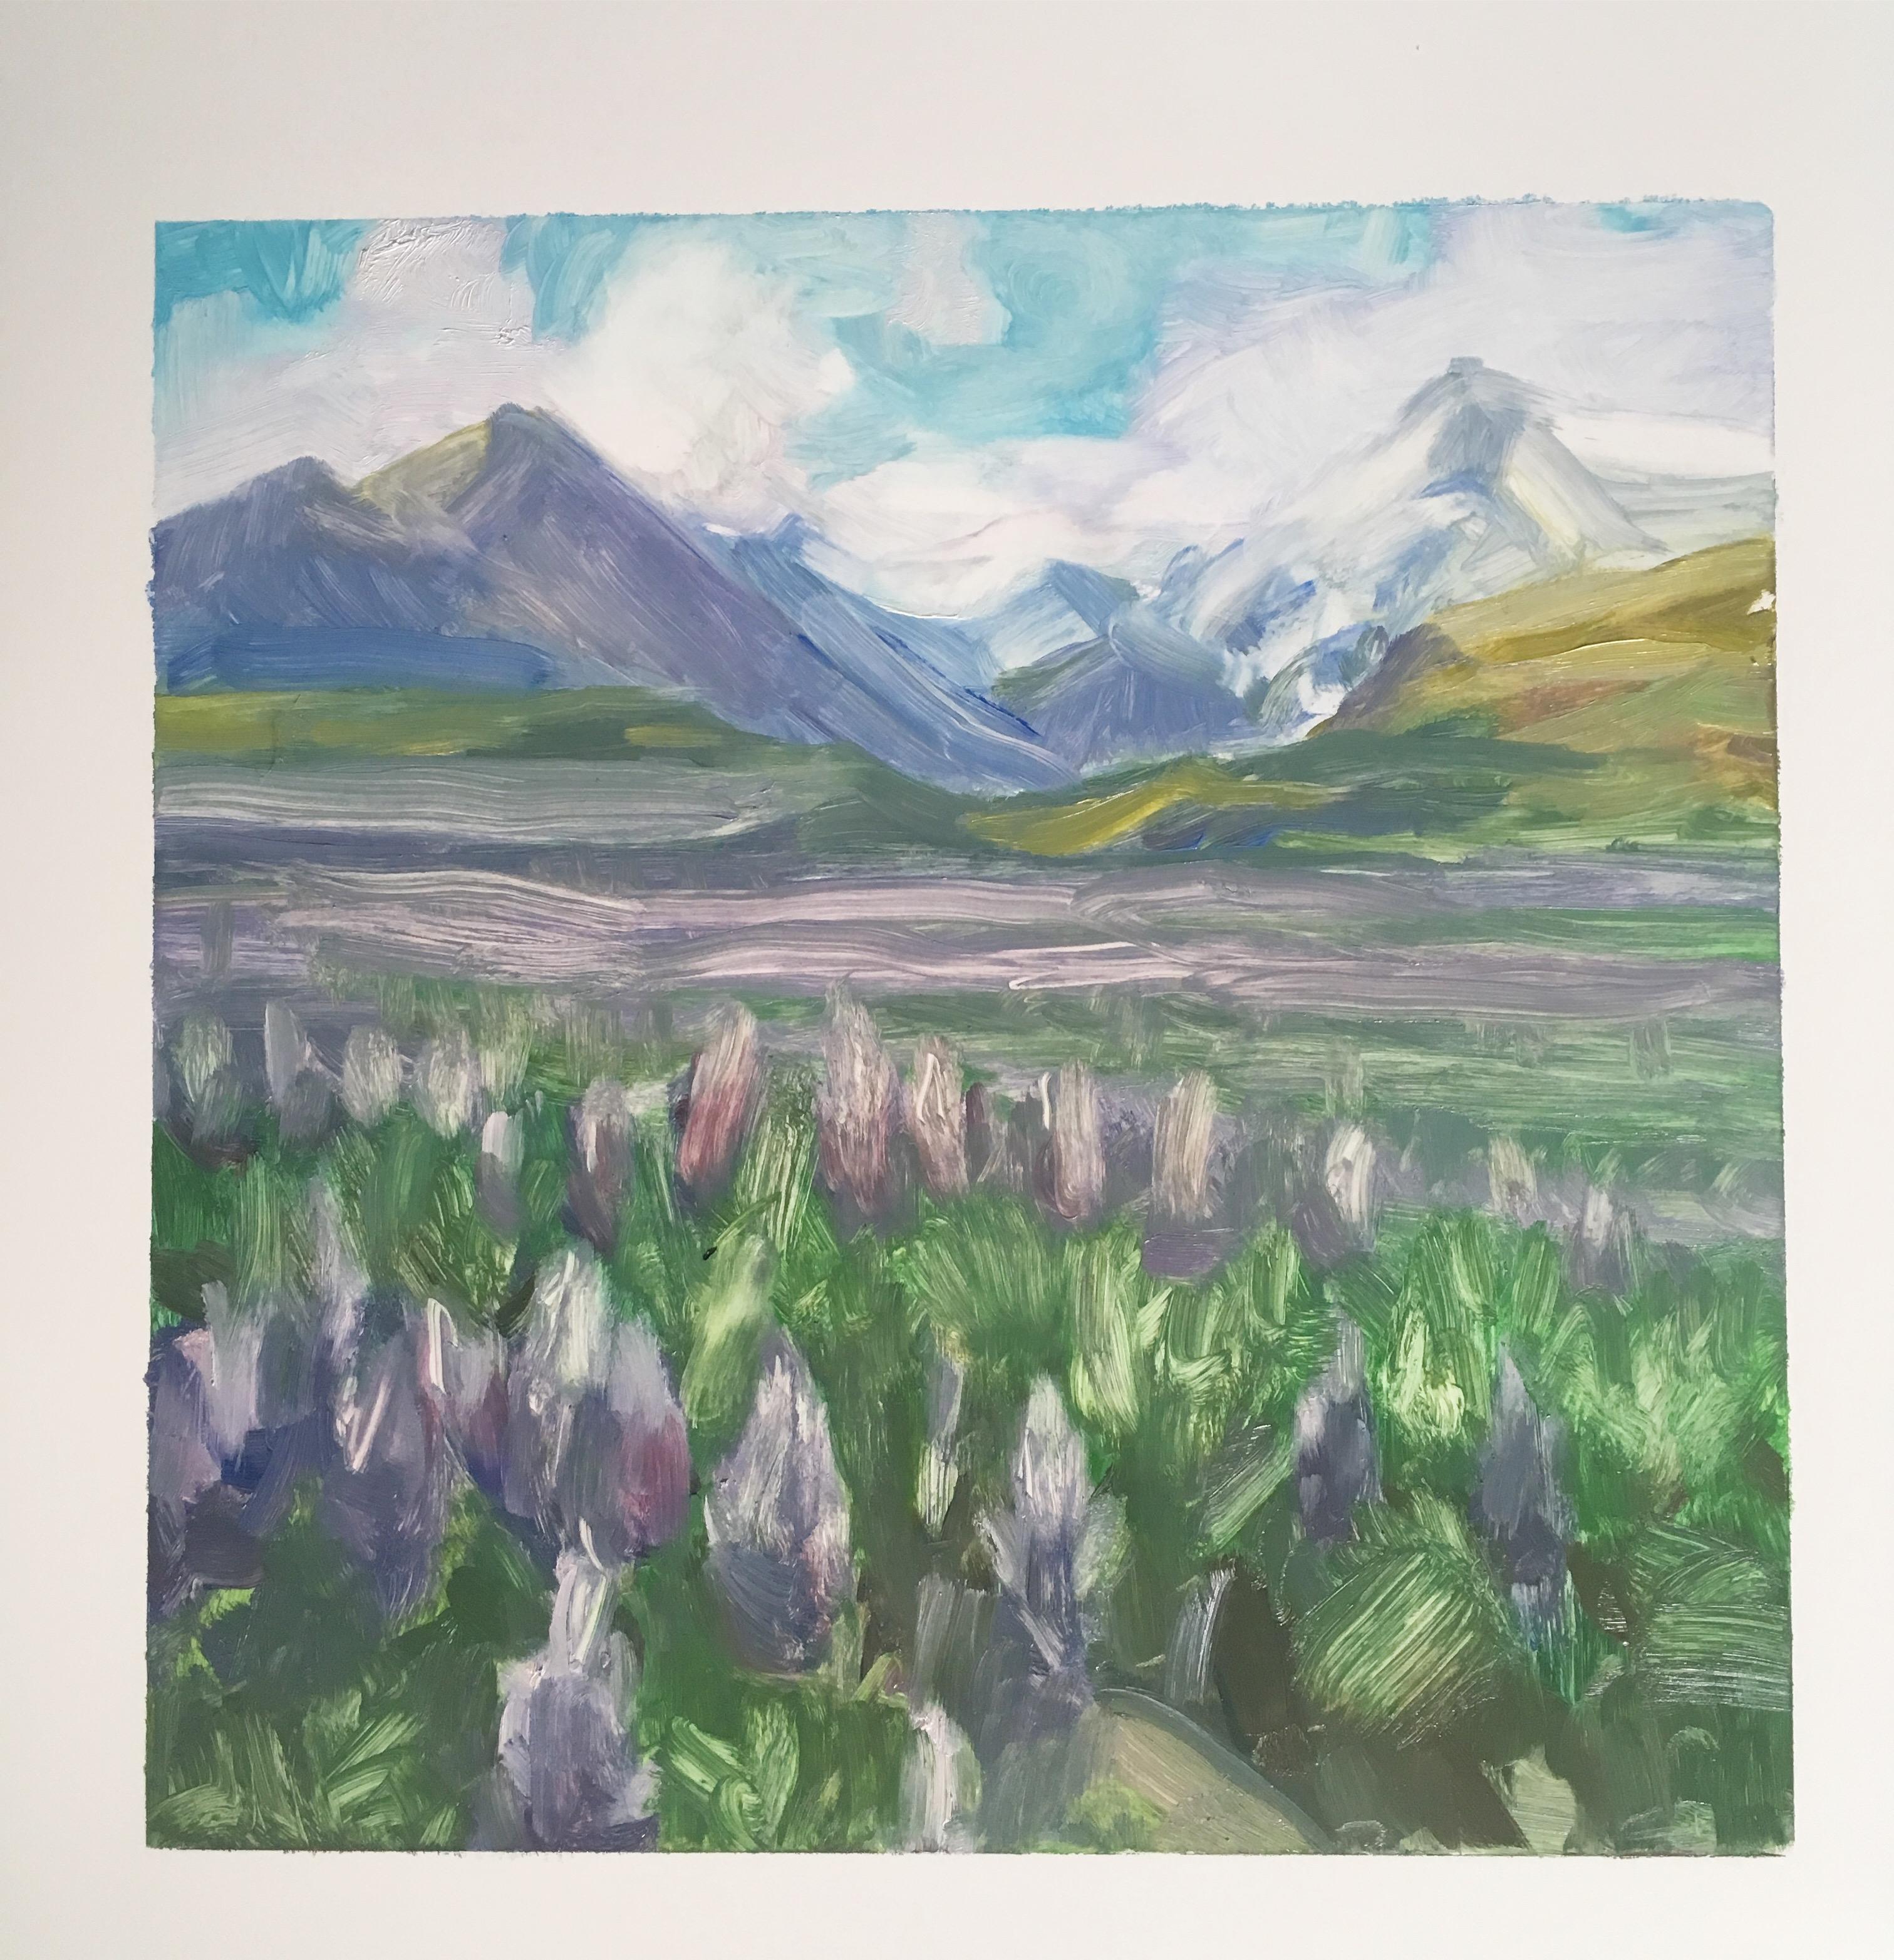 Landscape Painting Amanda Joy Brown - LUPIN - Peinture de paysage de montagne d'Islande, de lavande et de la prairie gazonnée